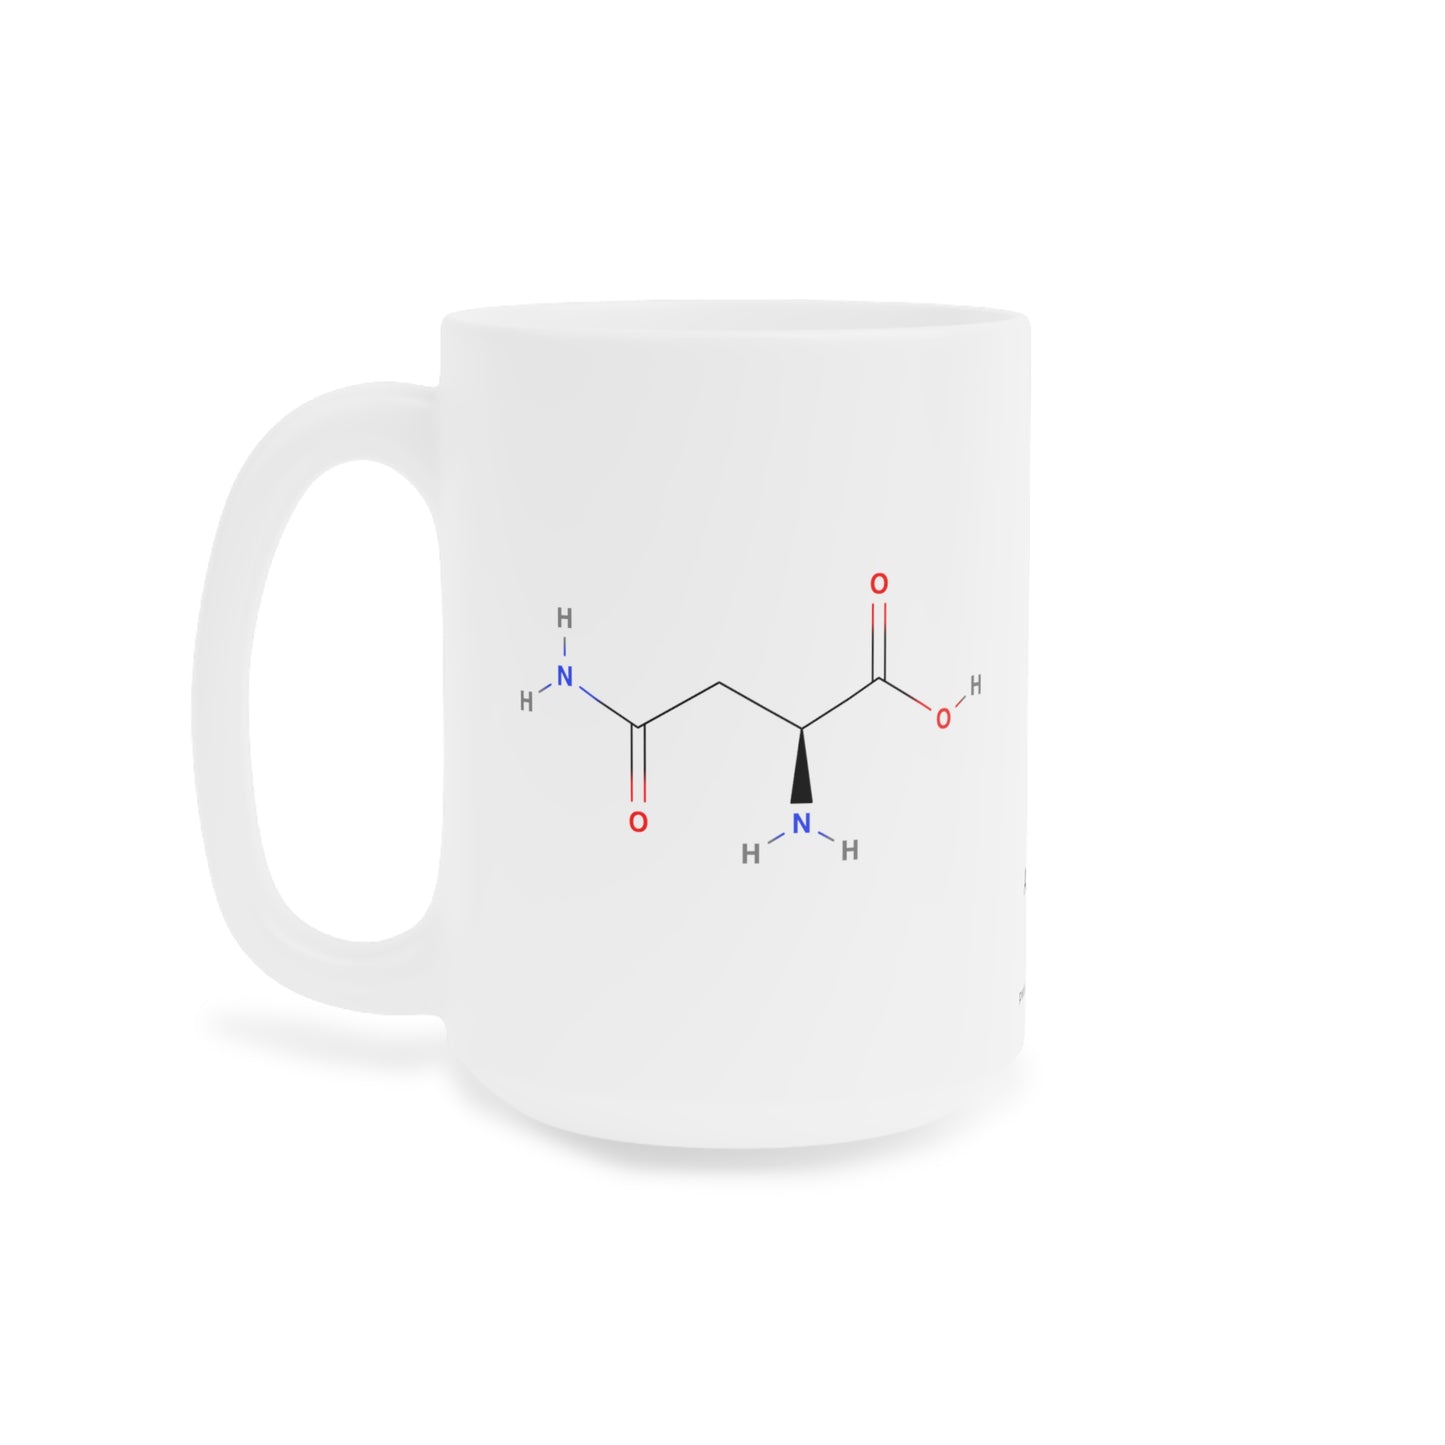 Coffee Mug 15oz - Asparagine